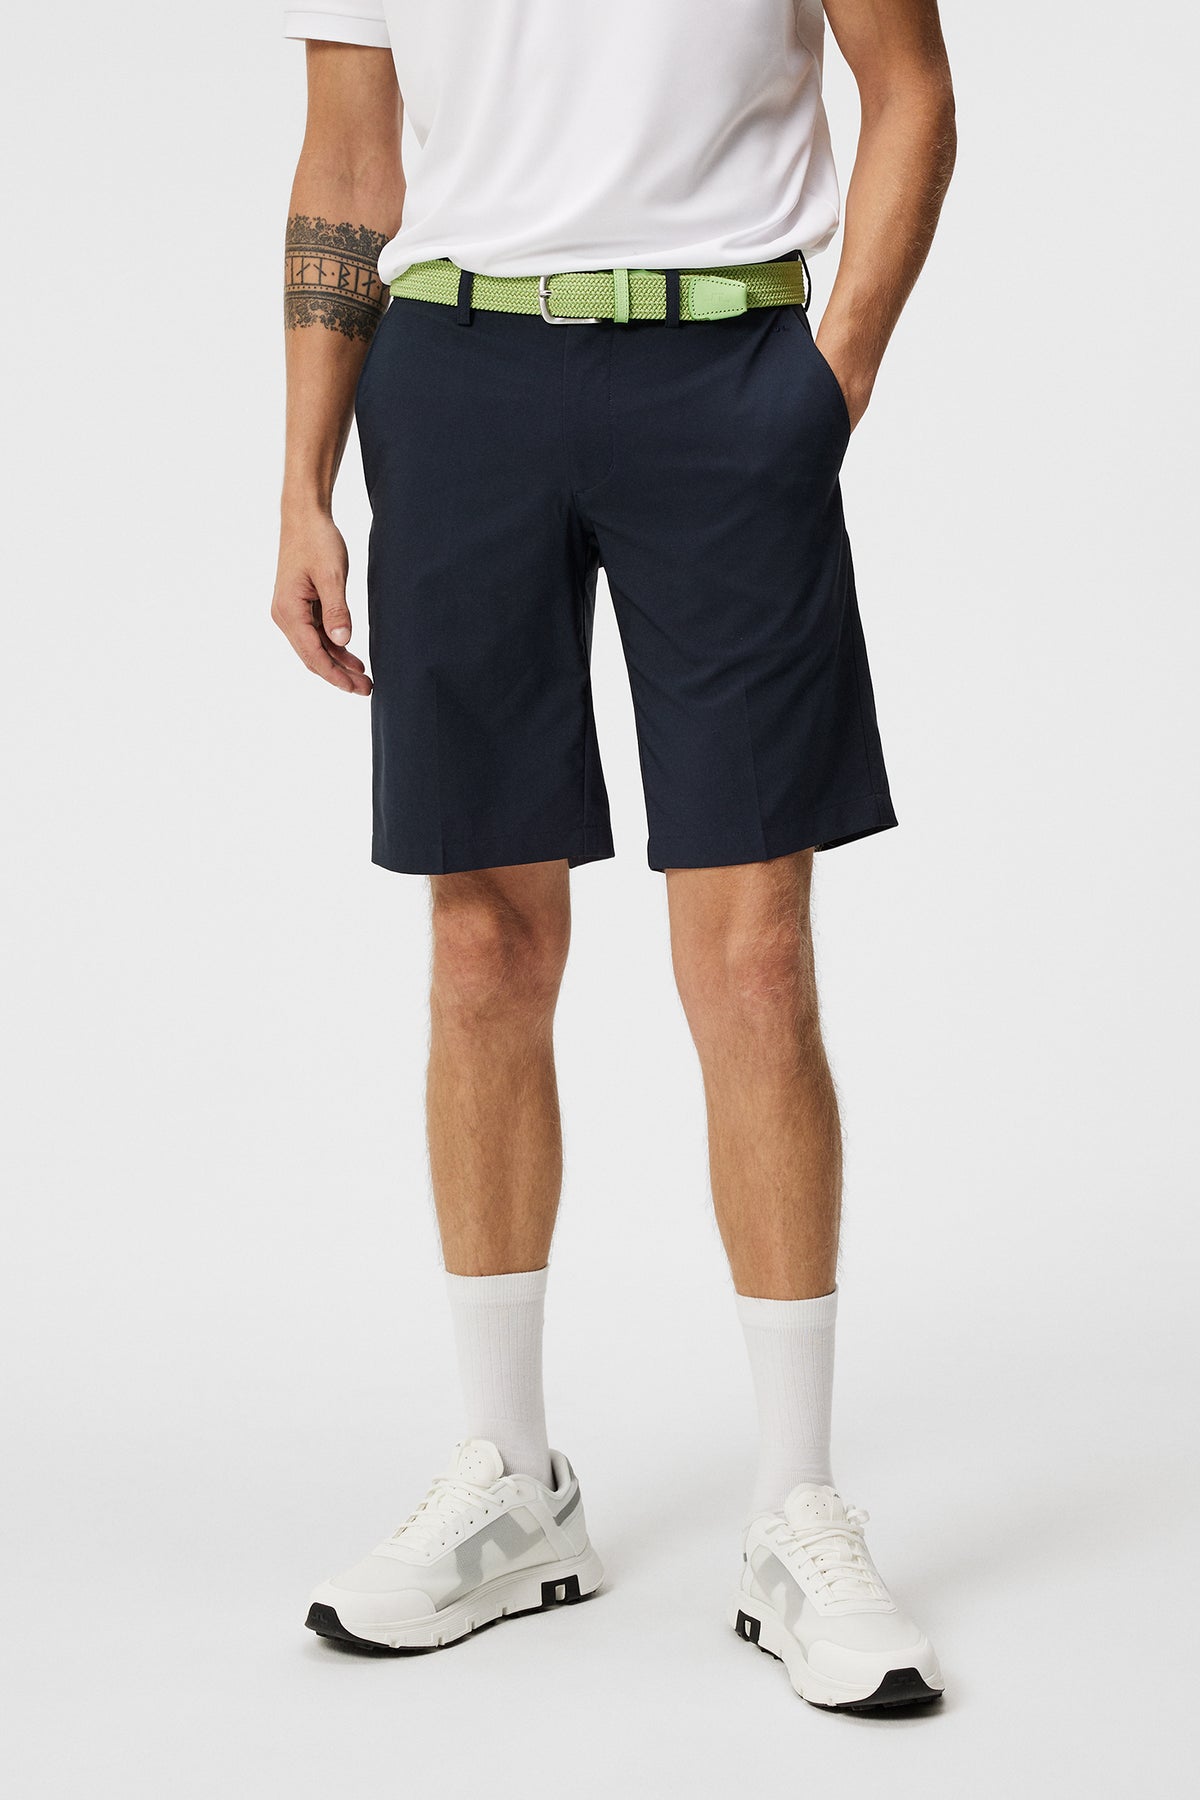 Somle Shorts / JL Navy